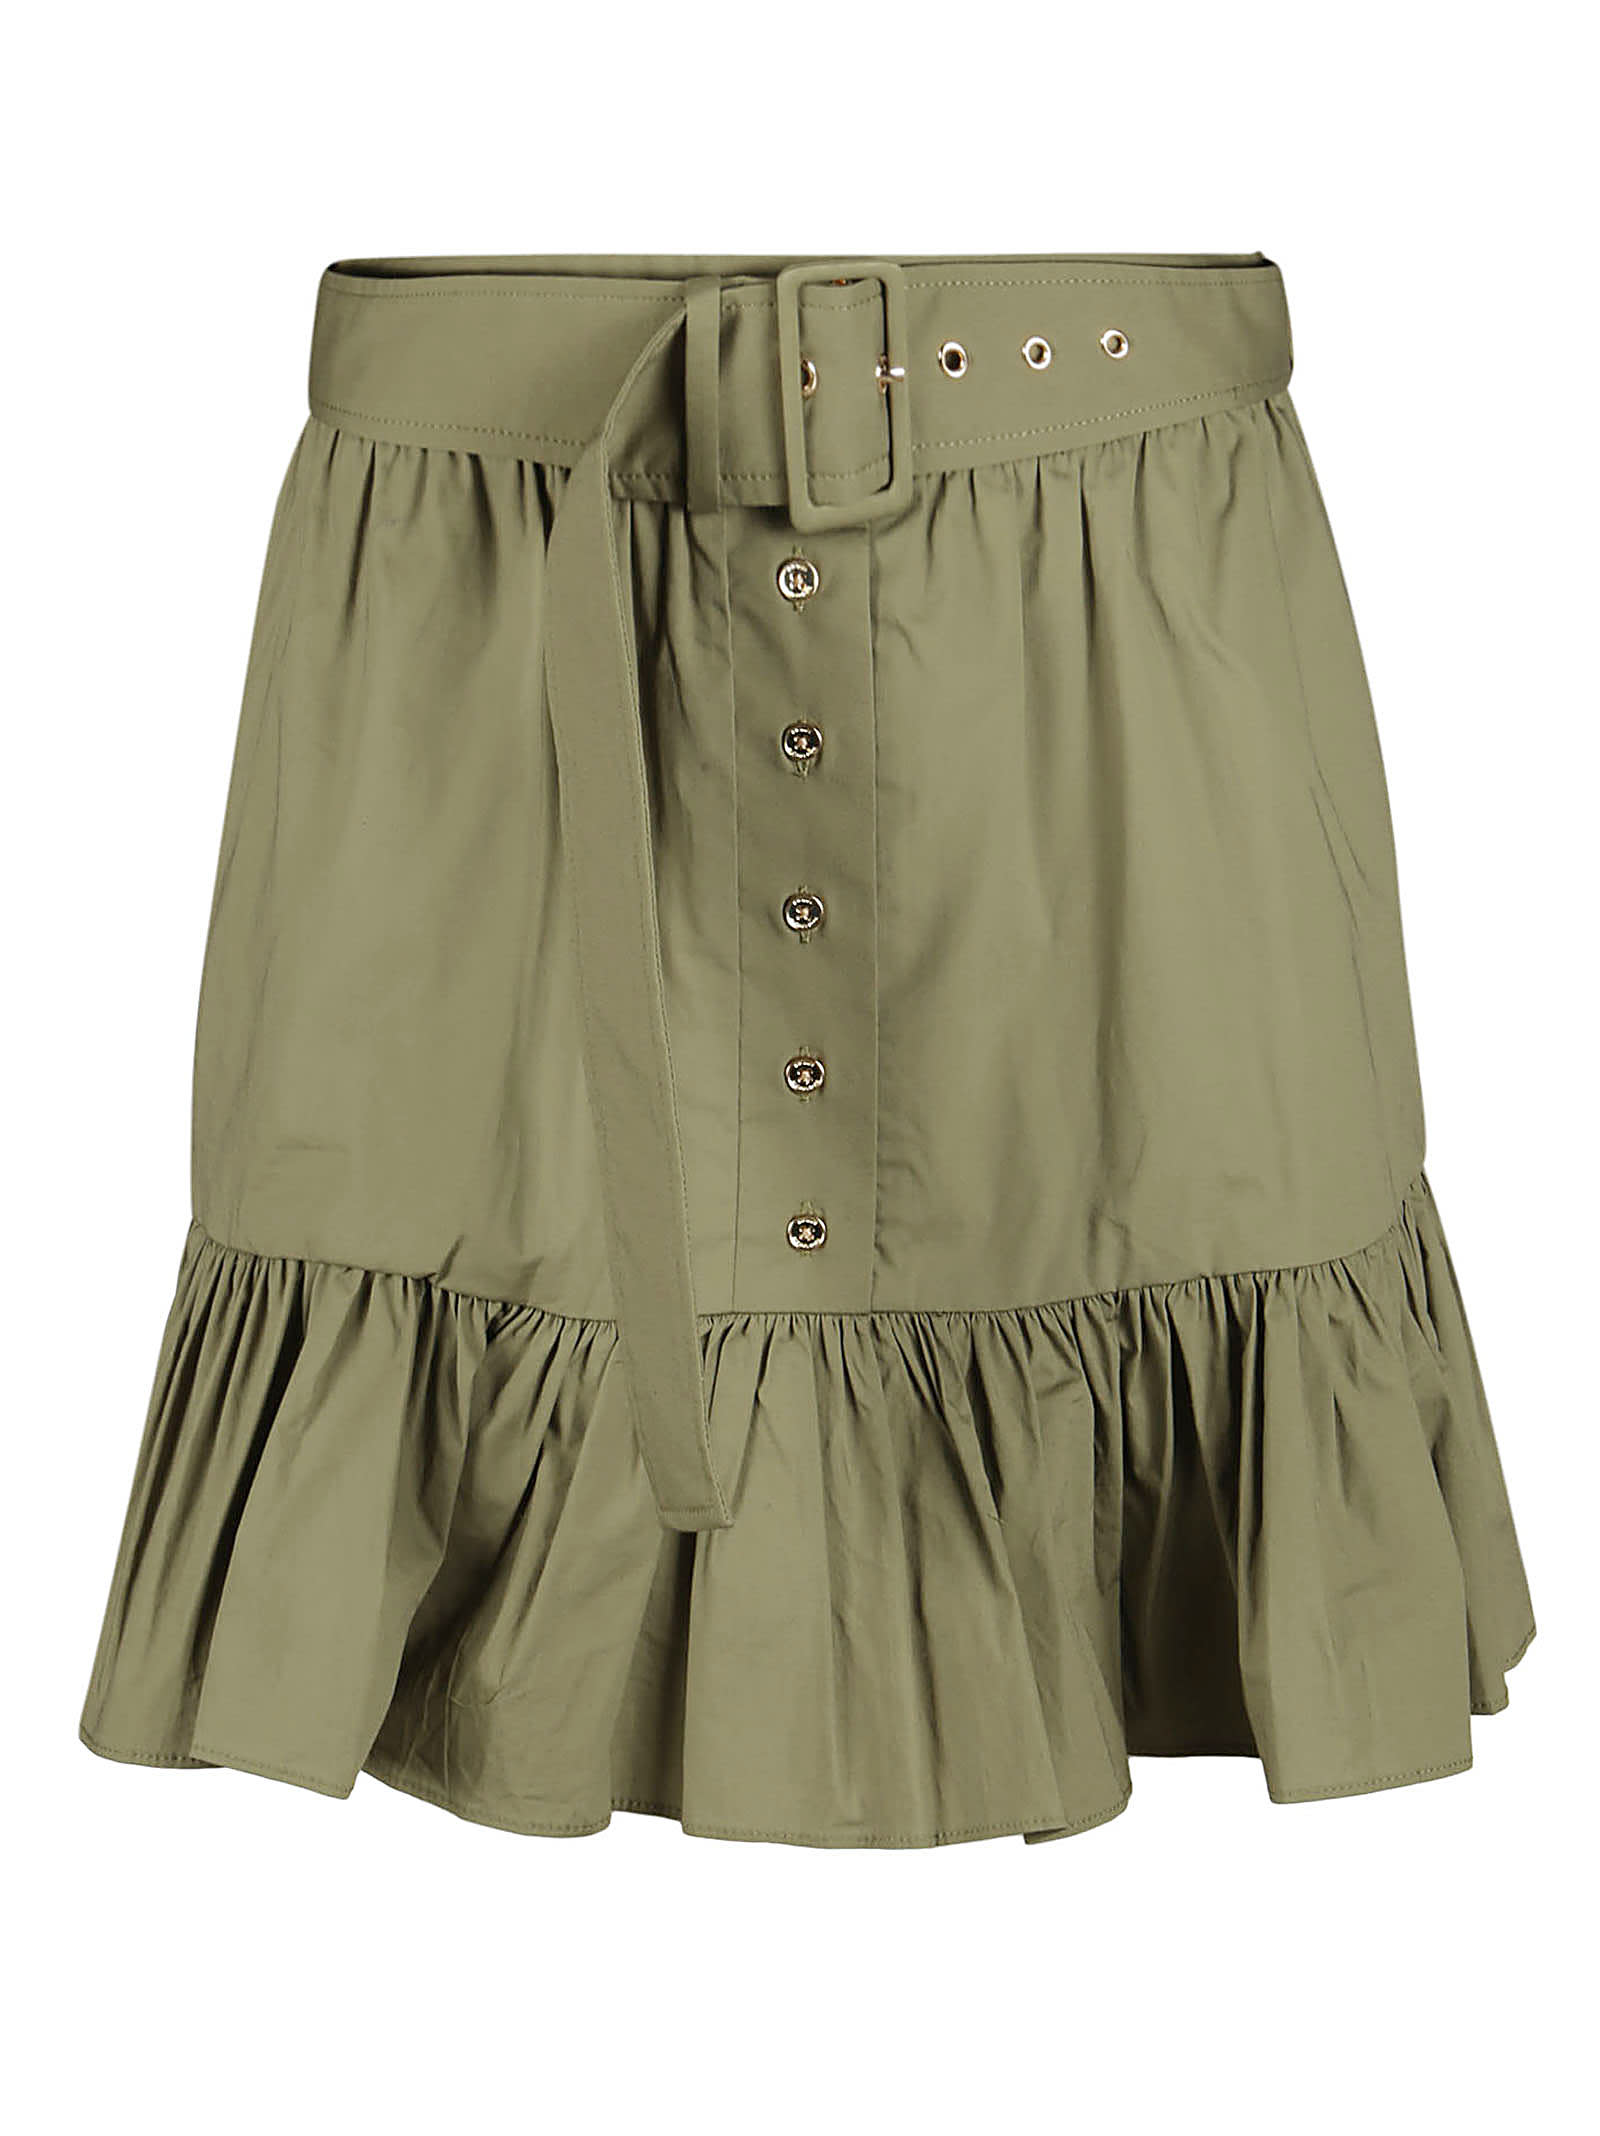 Michael Kors Belt Dust Ruffle Mini Skirt